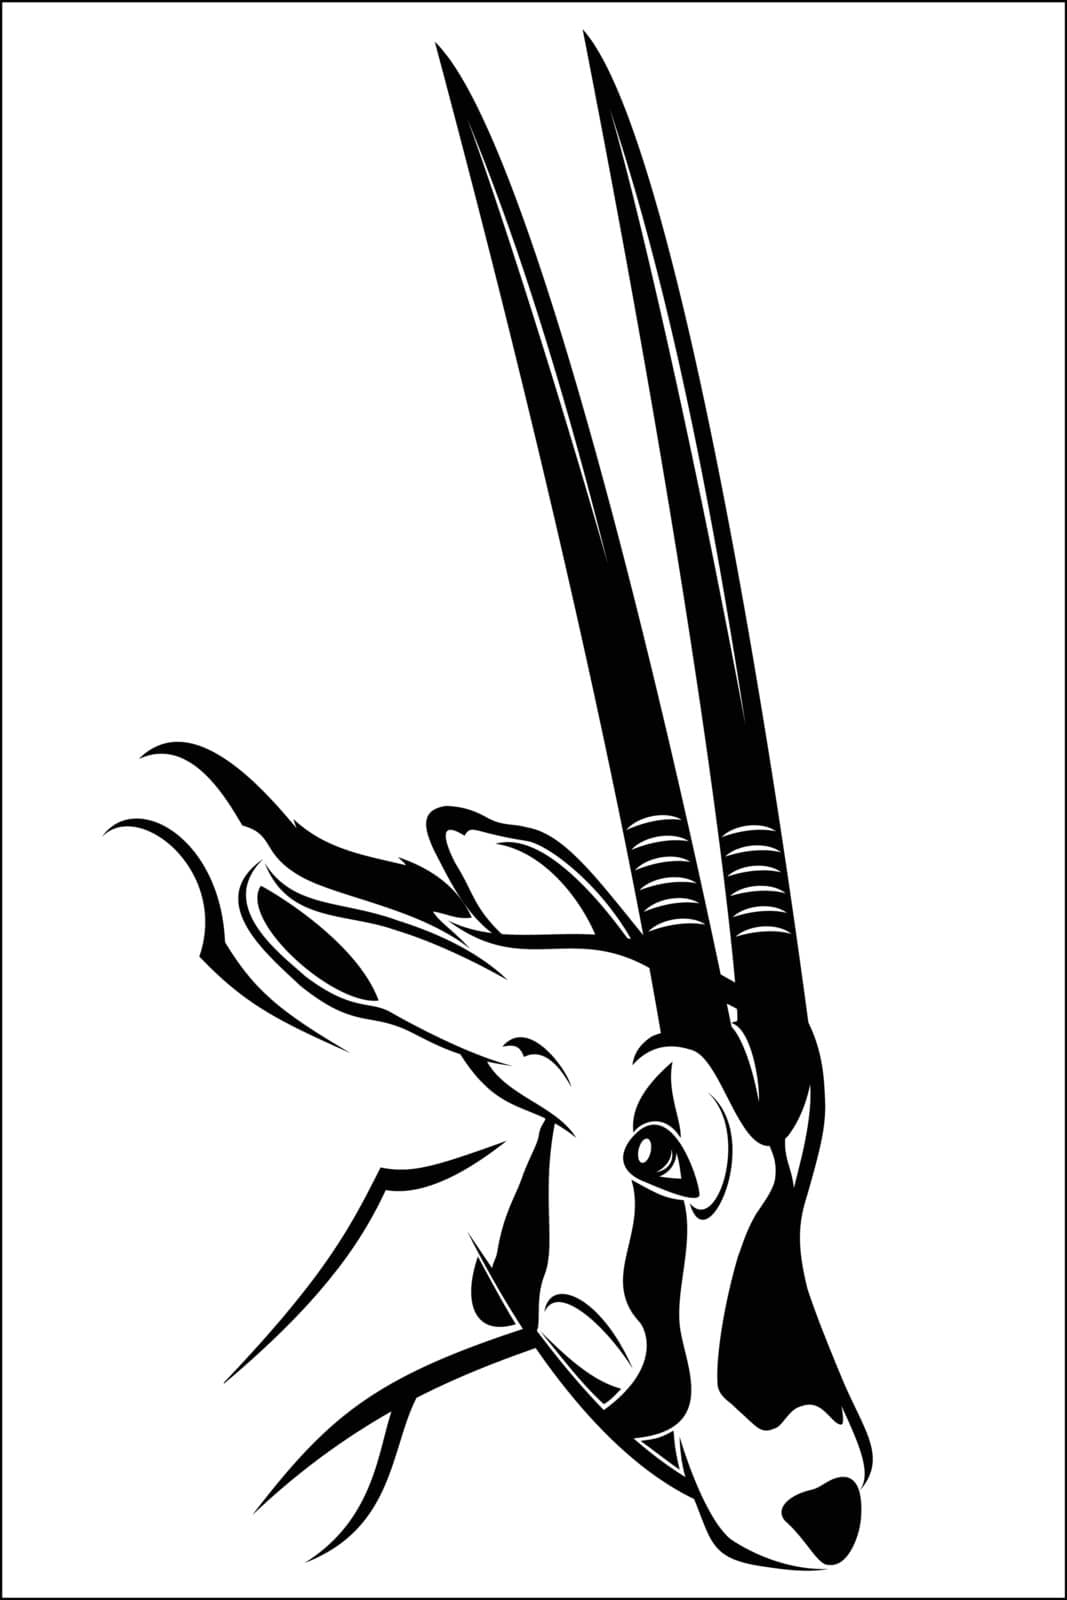 Gemsbok antelope by fxmdk